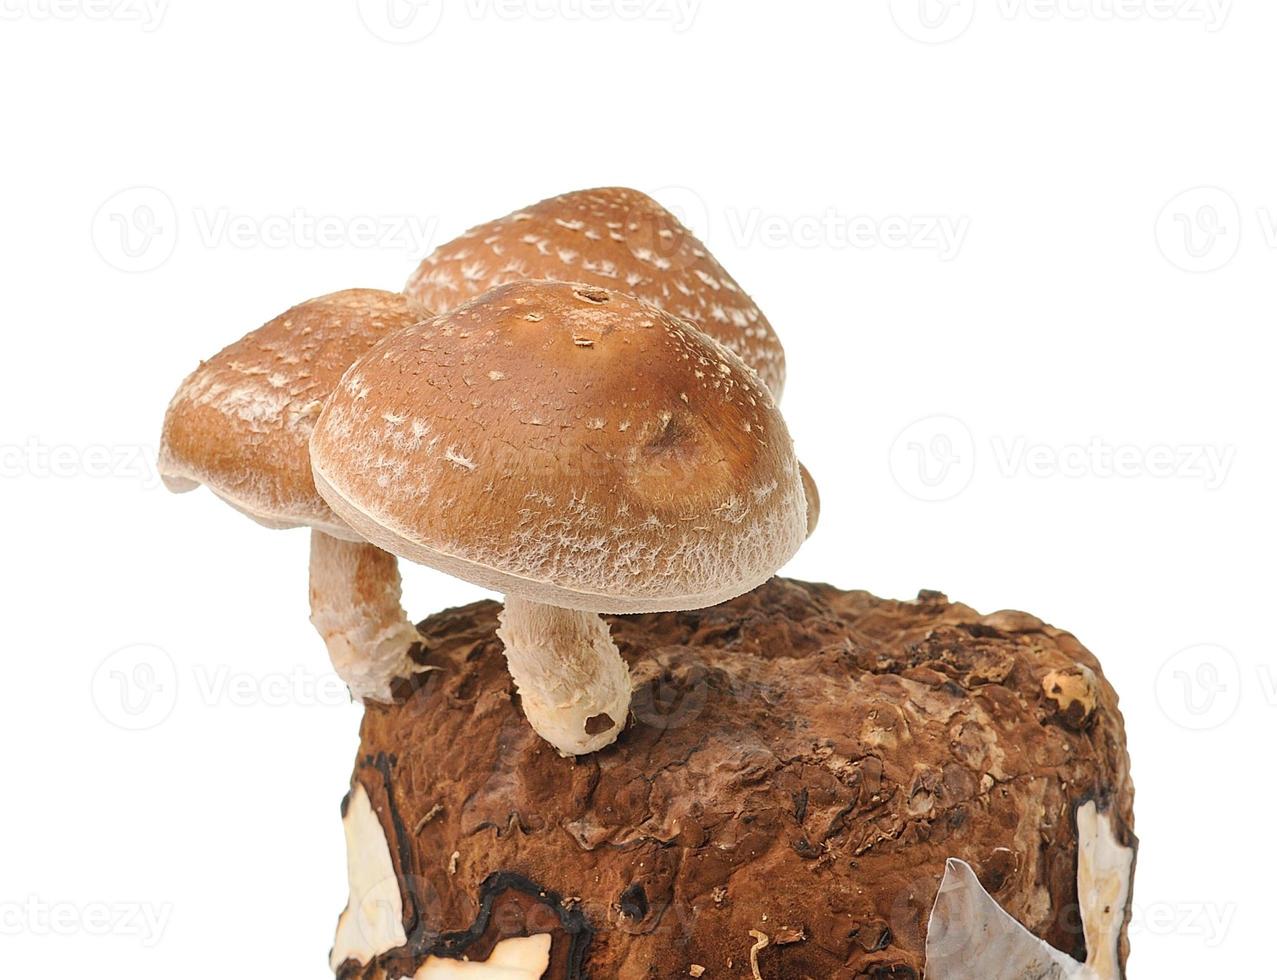 sac de champignons sur fond blanc photo